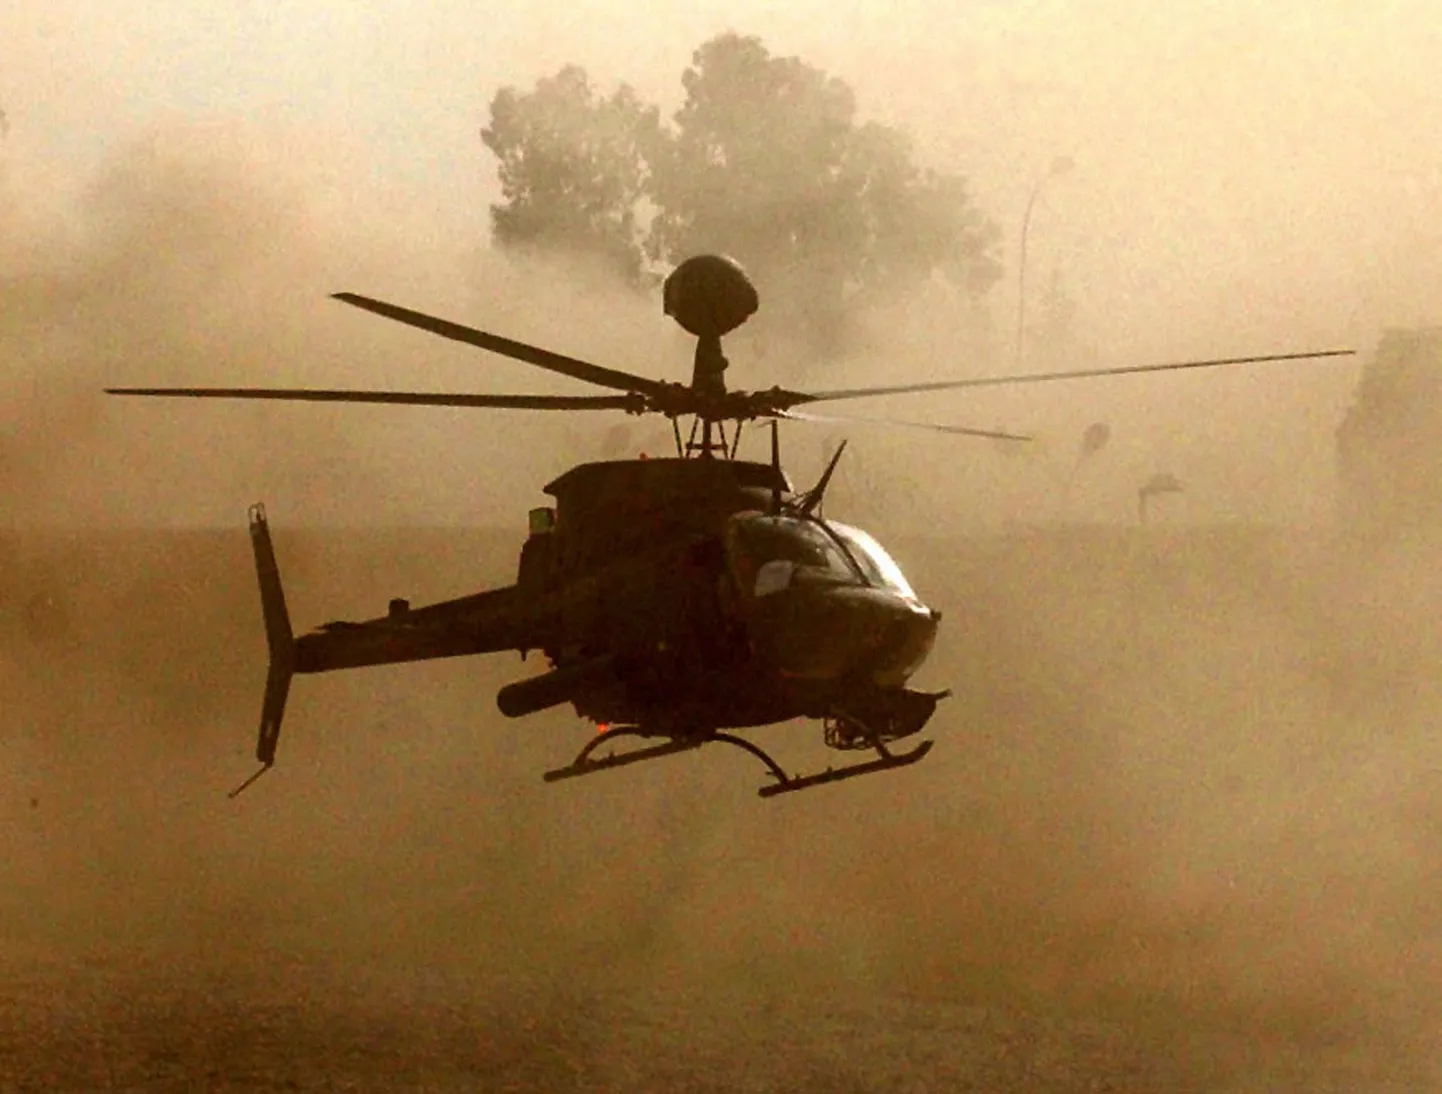 Ühendriikide õhuväe kahekohaline lahingukopter OH-58D Kiowa Warrior. Illustratiivne foto.